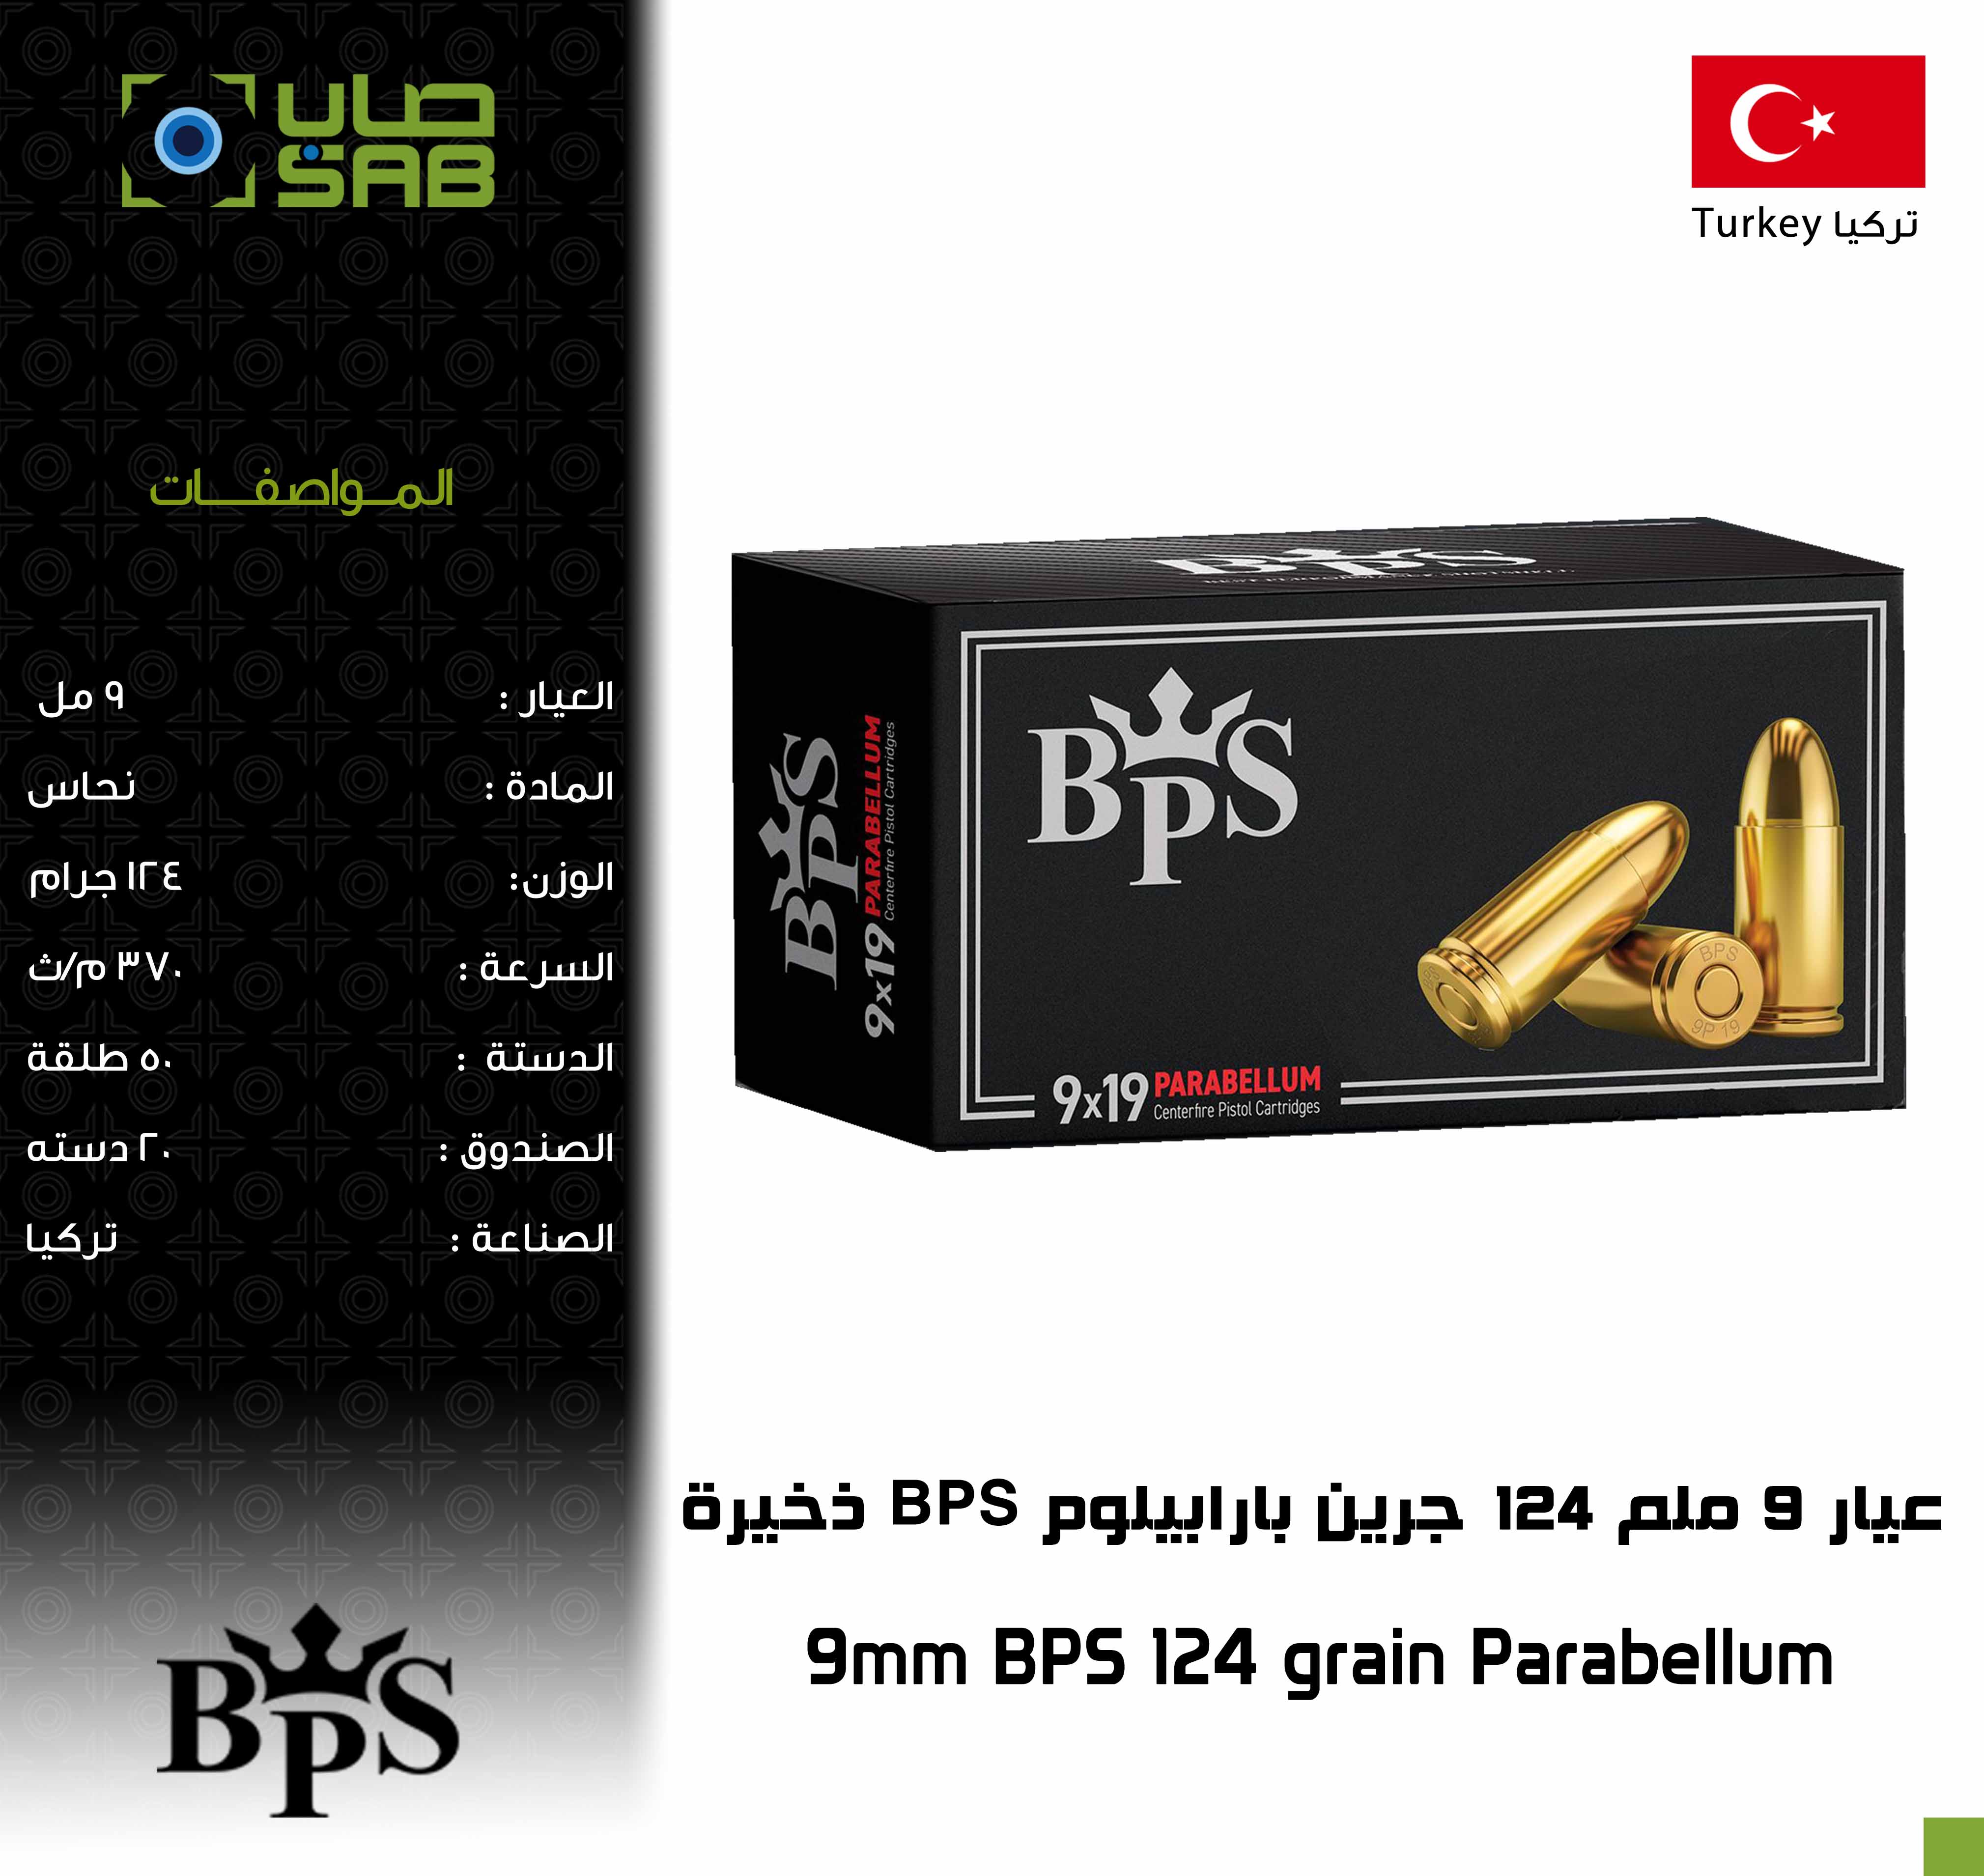  - - 9mm BPS 124 grain